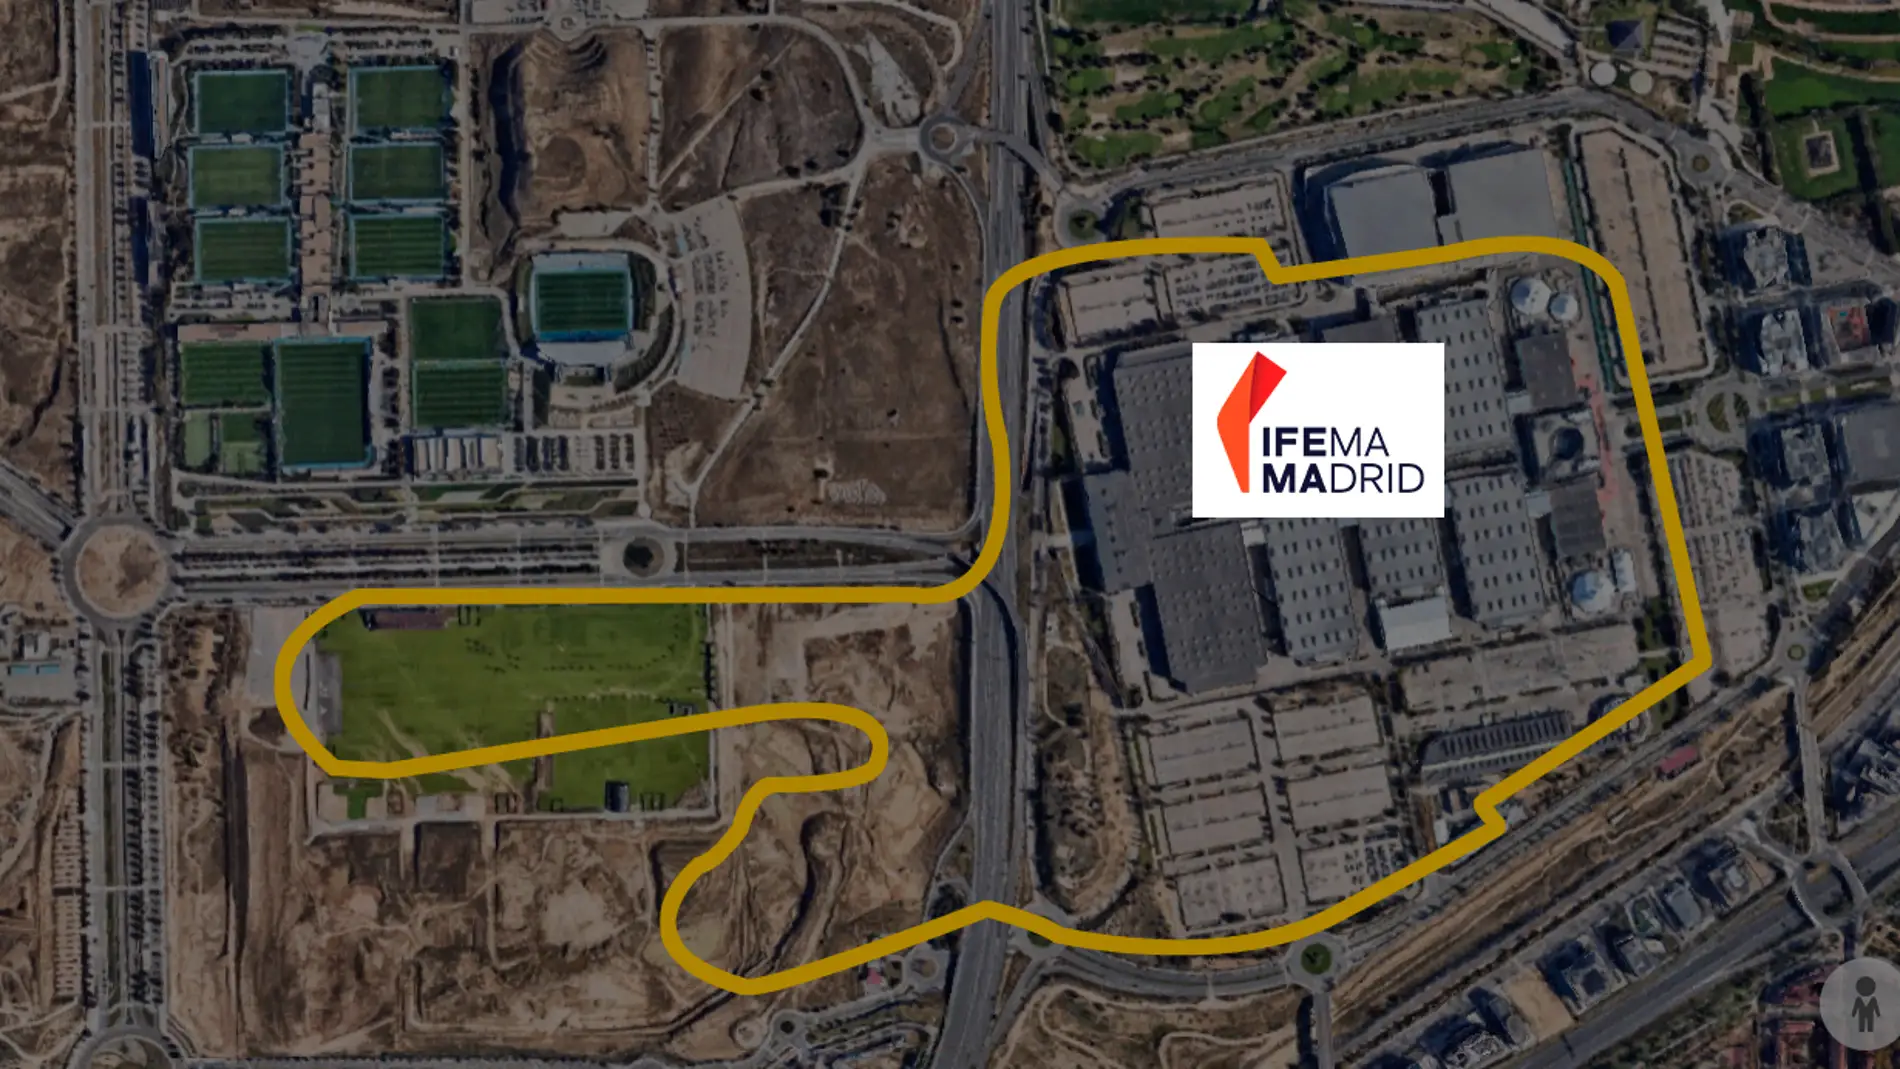 Madrid arrebata a Barcelona el Gran Premio de España de Fórmula 1 a partir de 2026